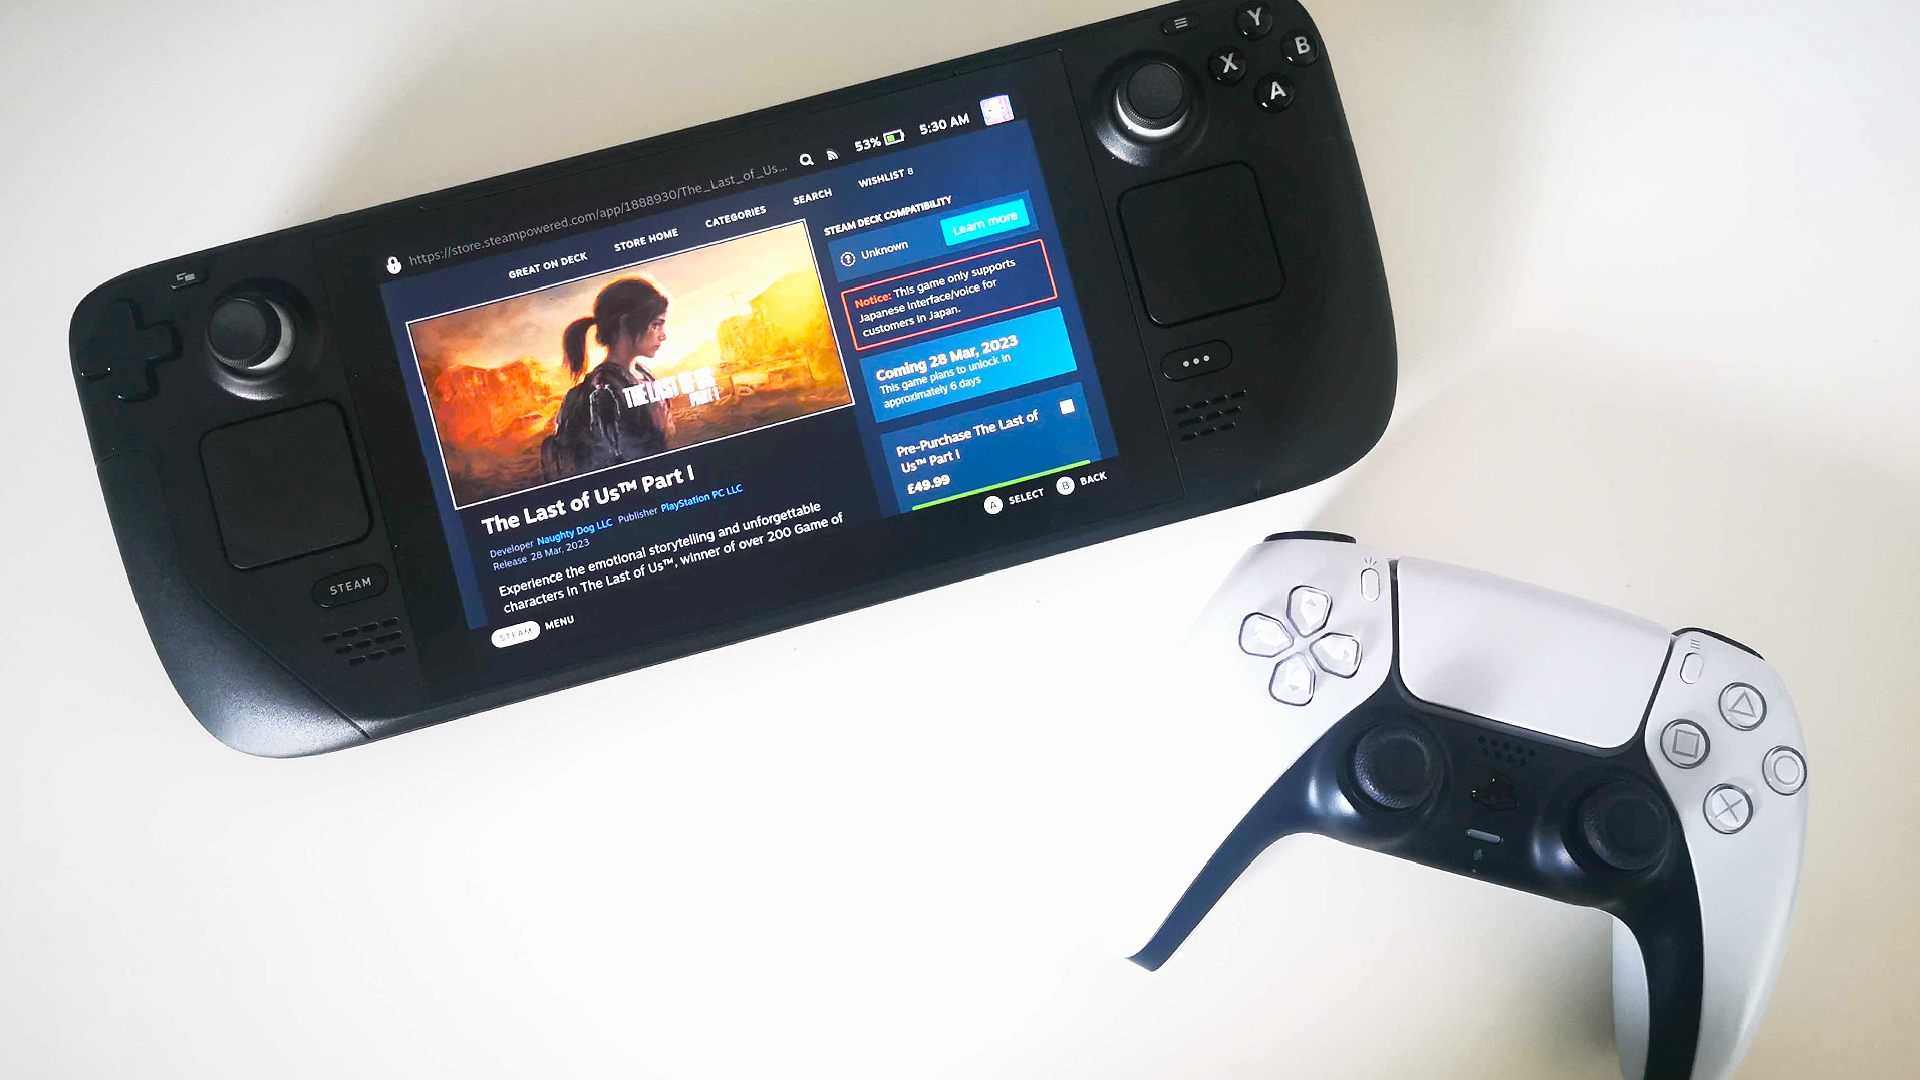 The Last of Us Steam Deck: Handheld Seterusnya dengan PlayStation DualSense Controller